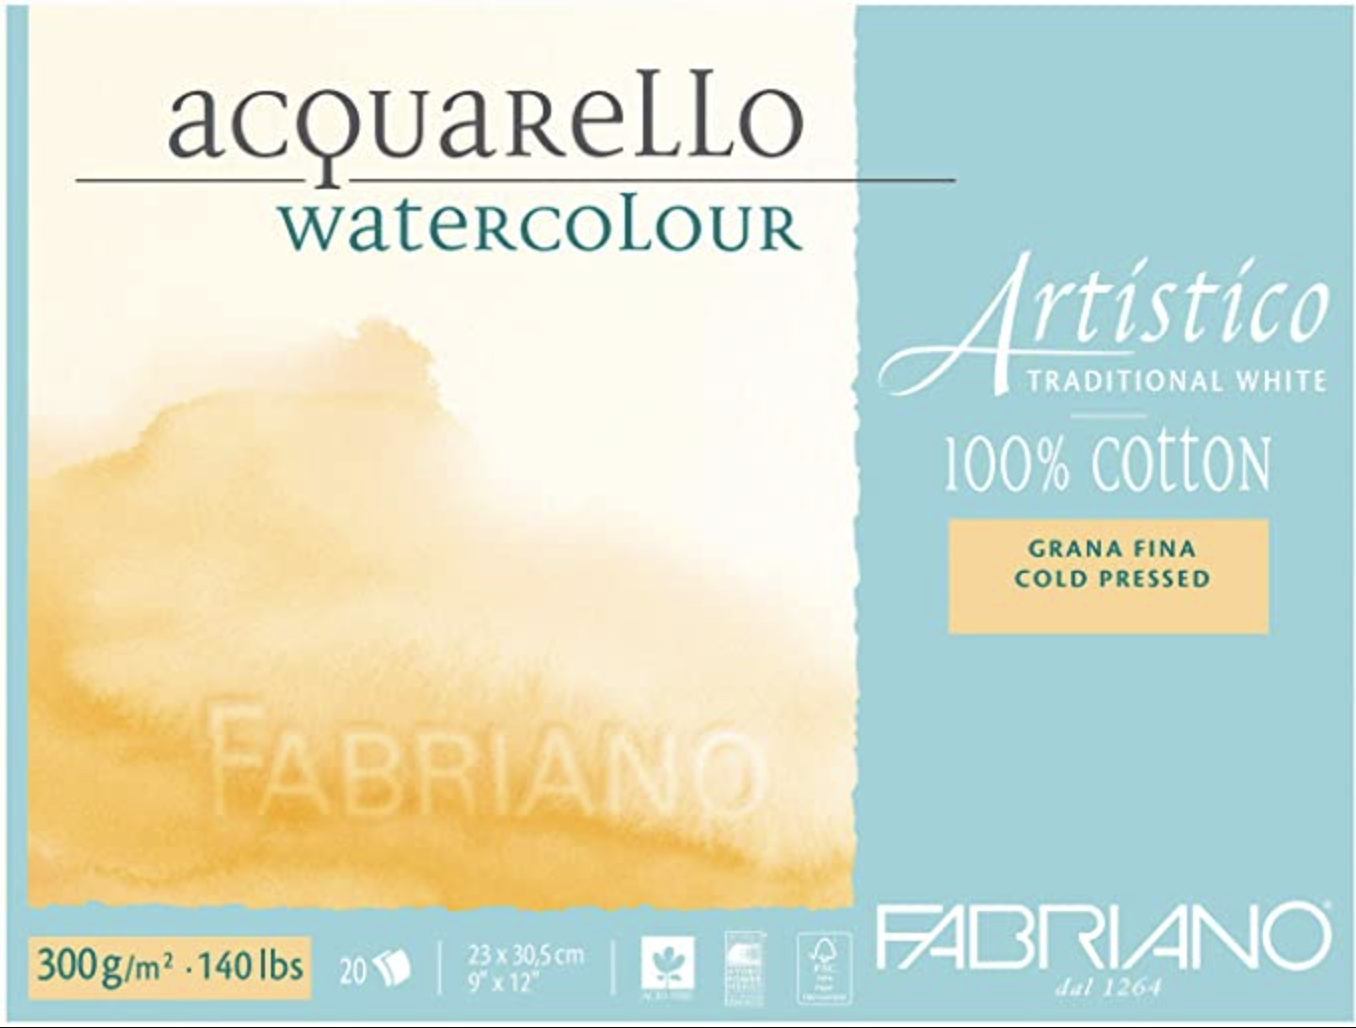 Fabriano Artistico Watercolor Blocks - Extra White & Traditional White